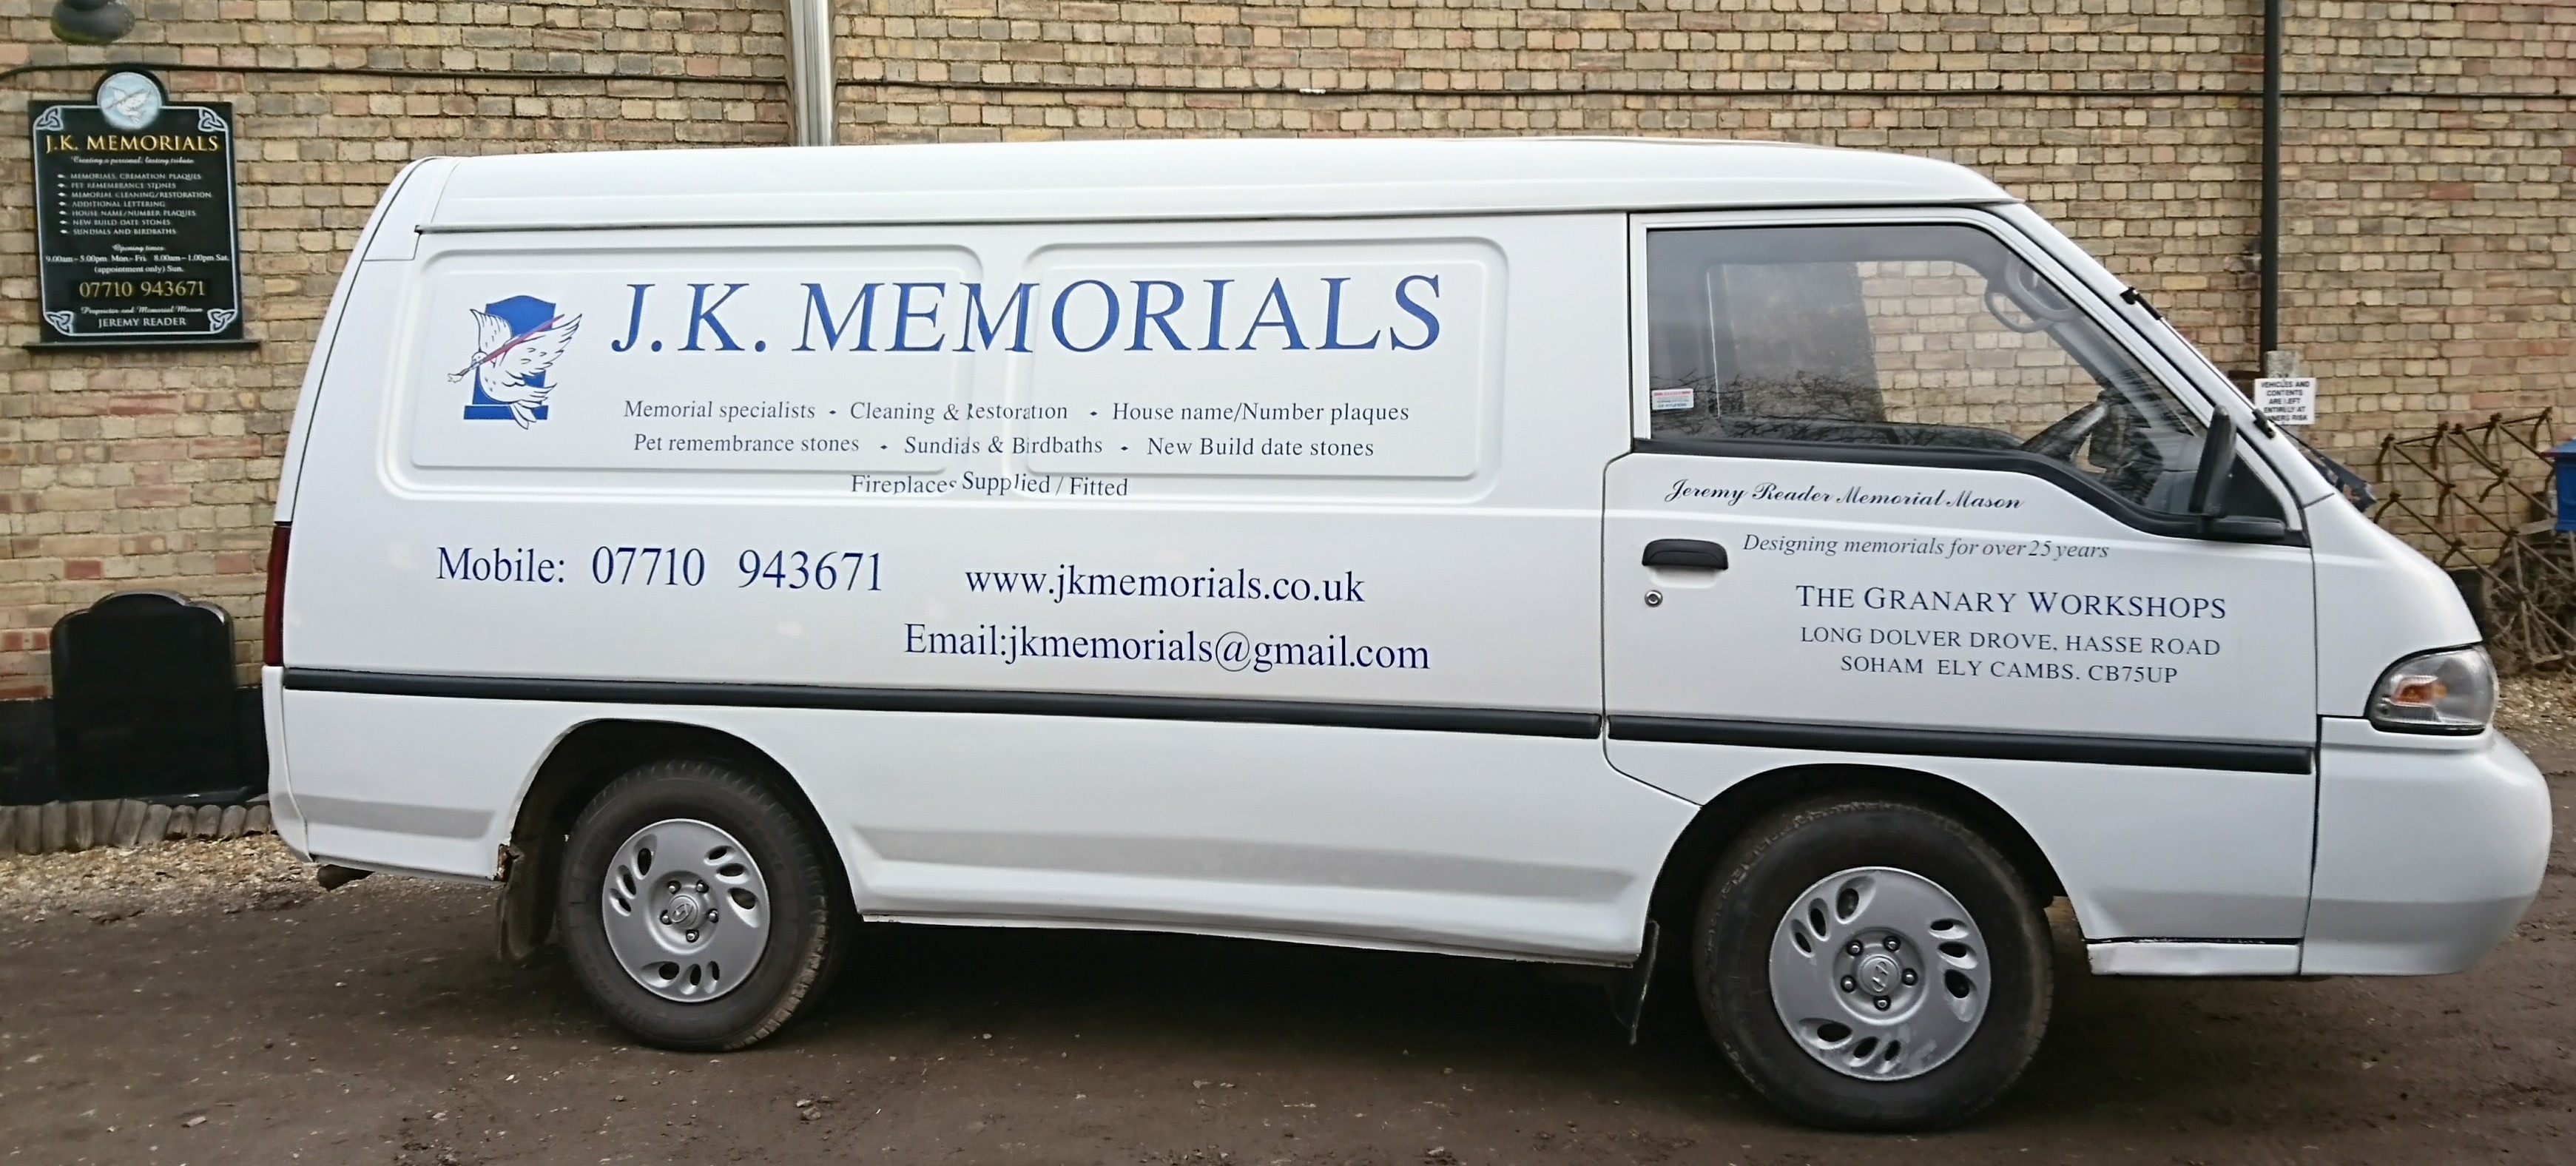 JK Memorials Van